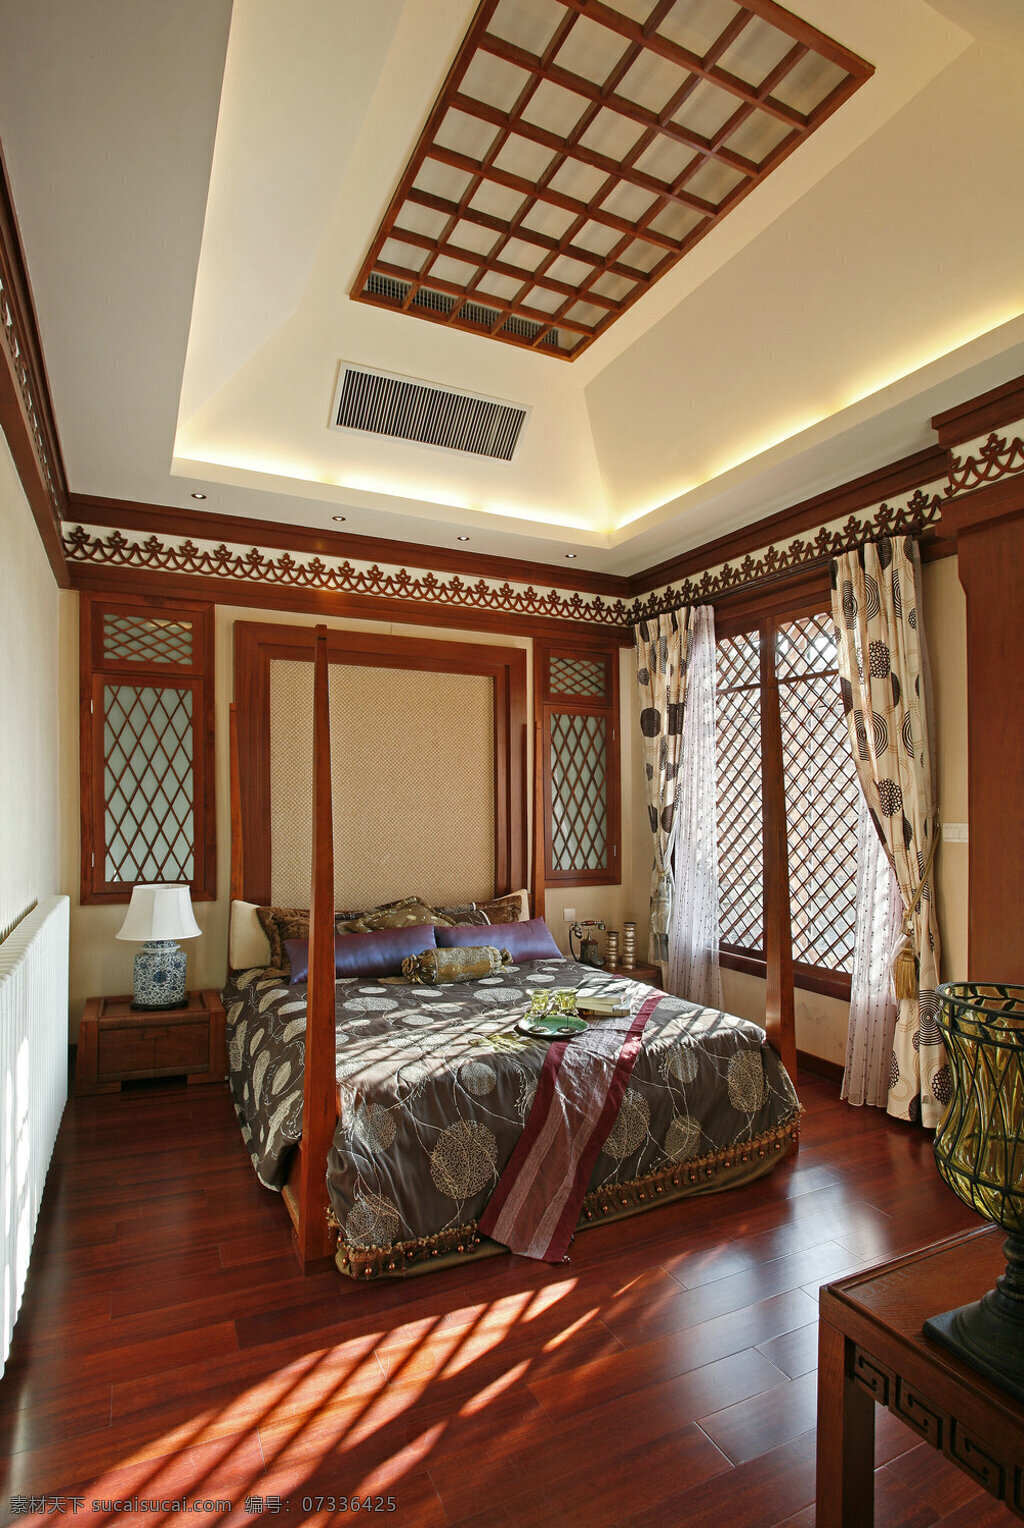 中式 风情 花纹 床 品 卧室 室内装修 效果图 卧室装修 客厅装修 木地板 米色背景墙 斑点窗帘